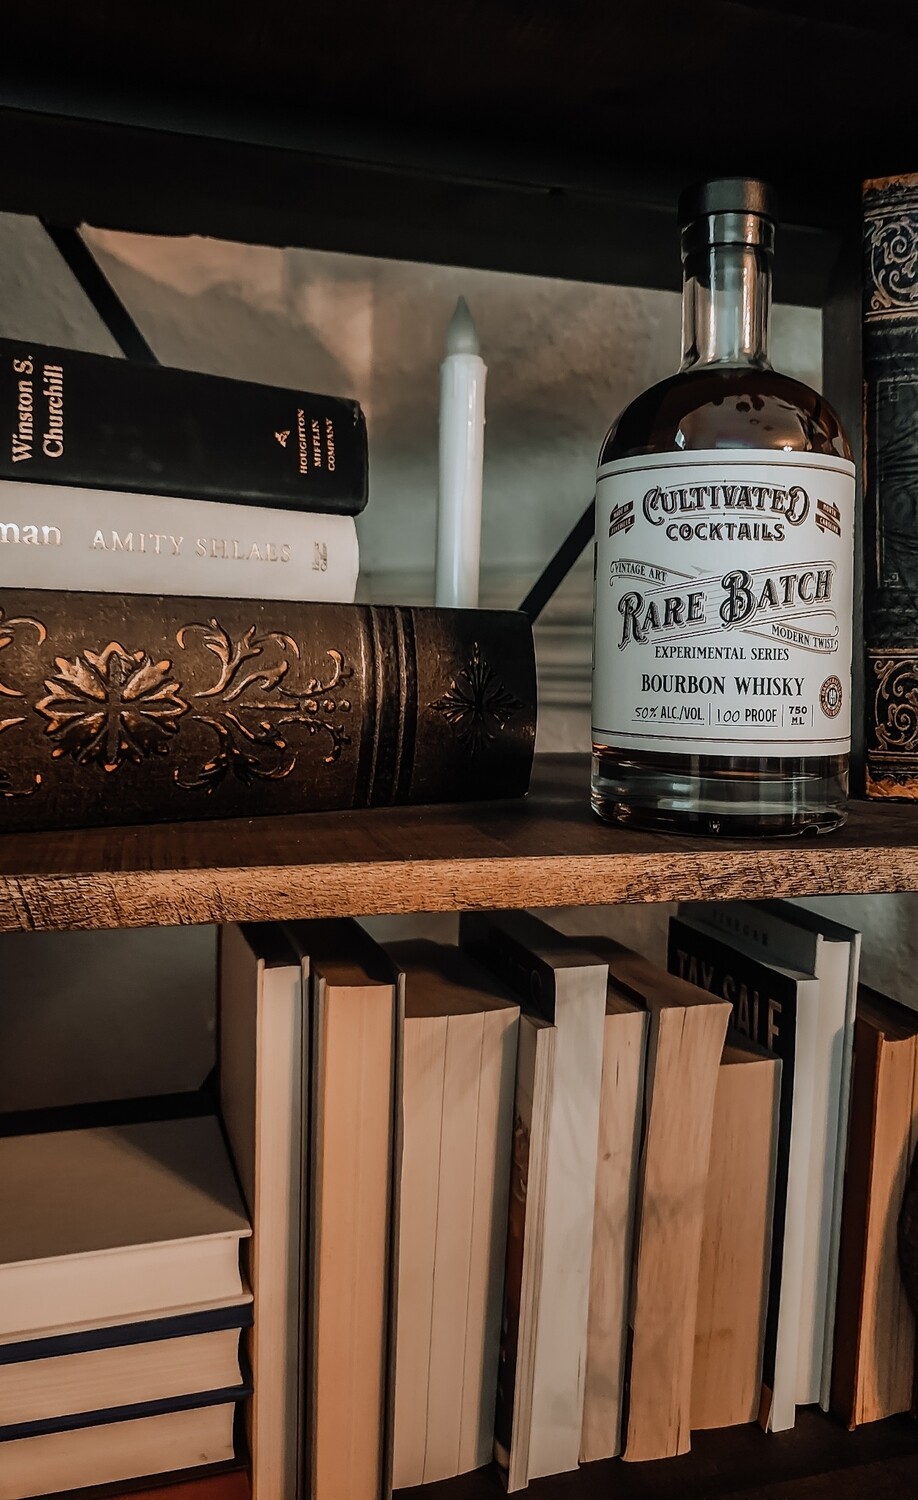 Rare Batch Bourbon Whisky